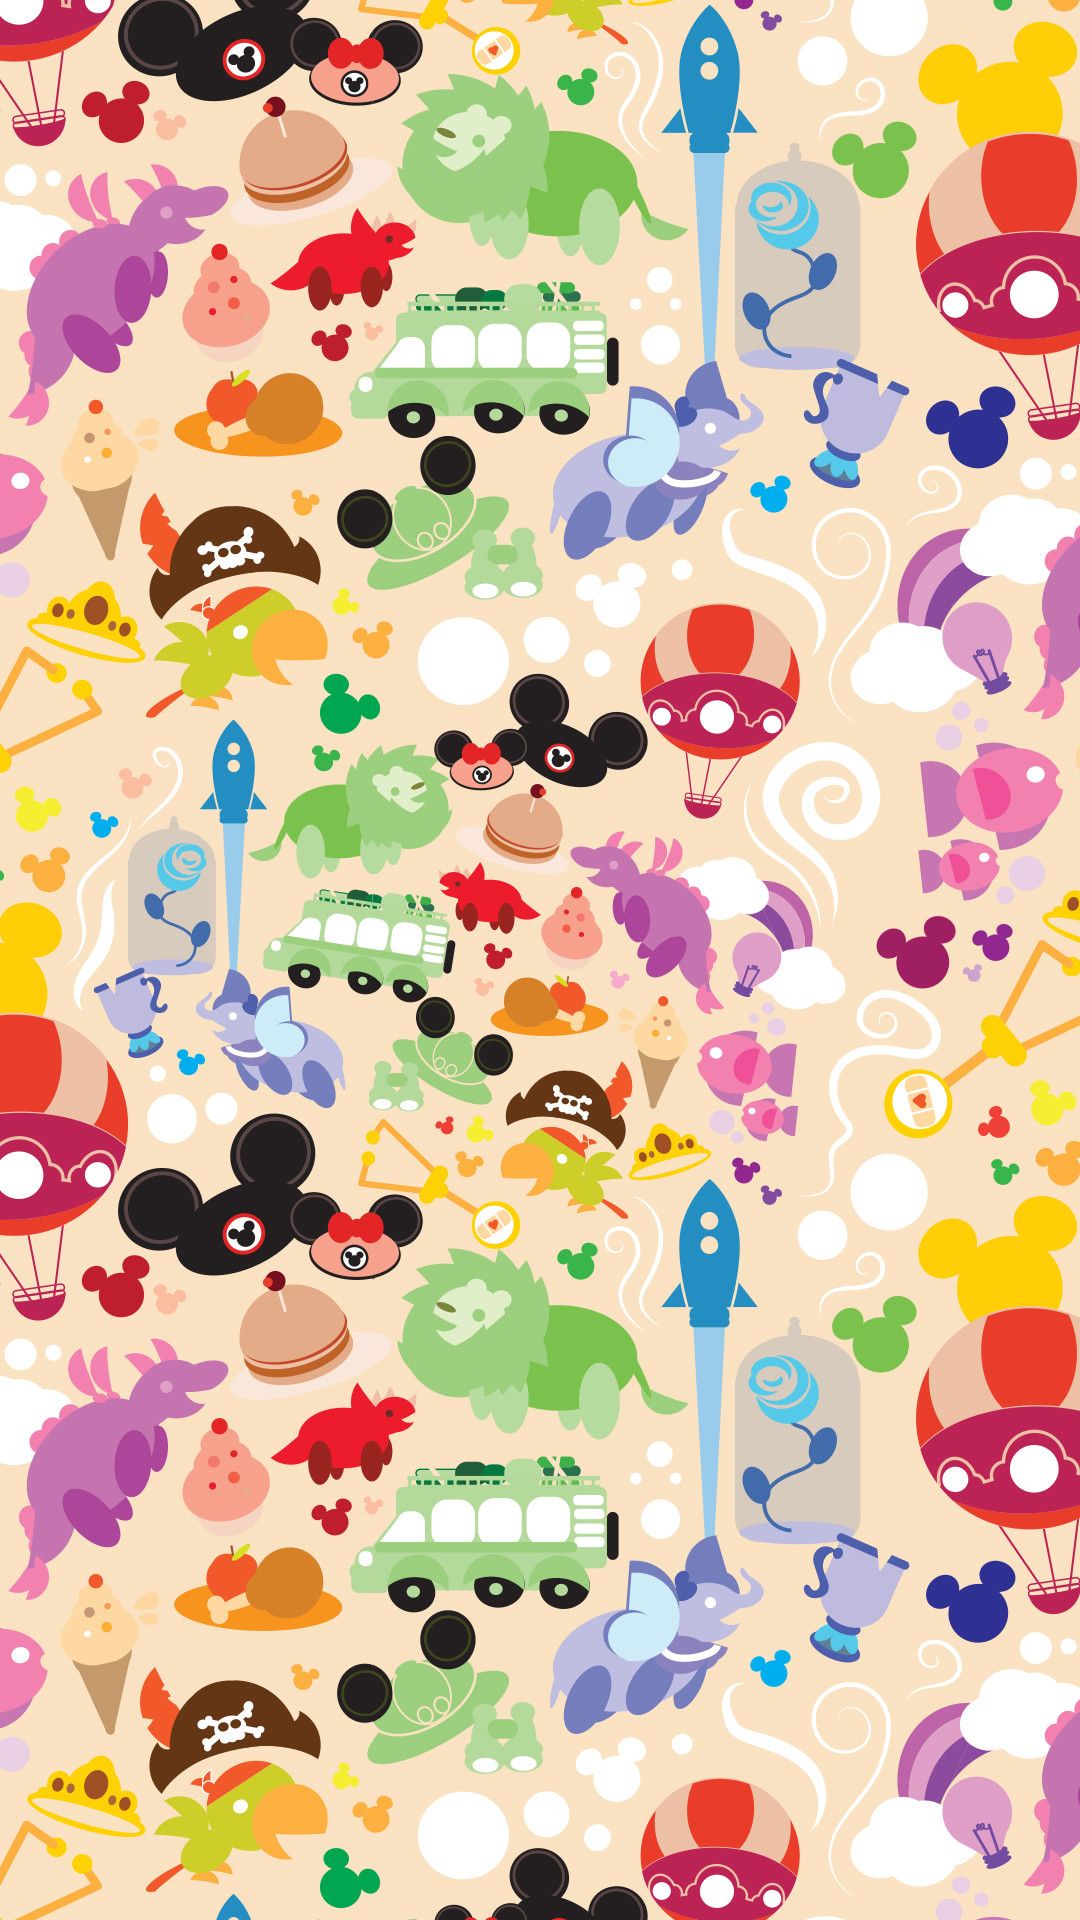 Cute Disney Villains Wallpapers